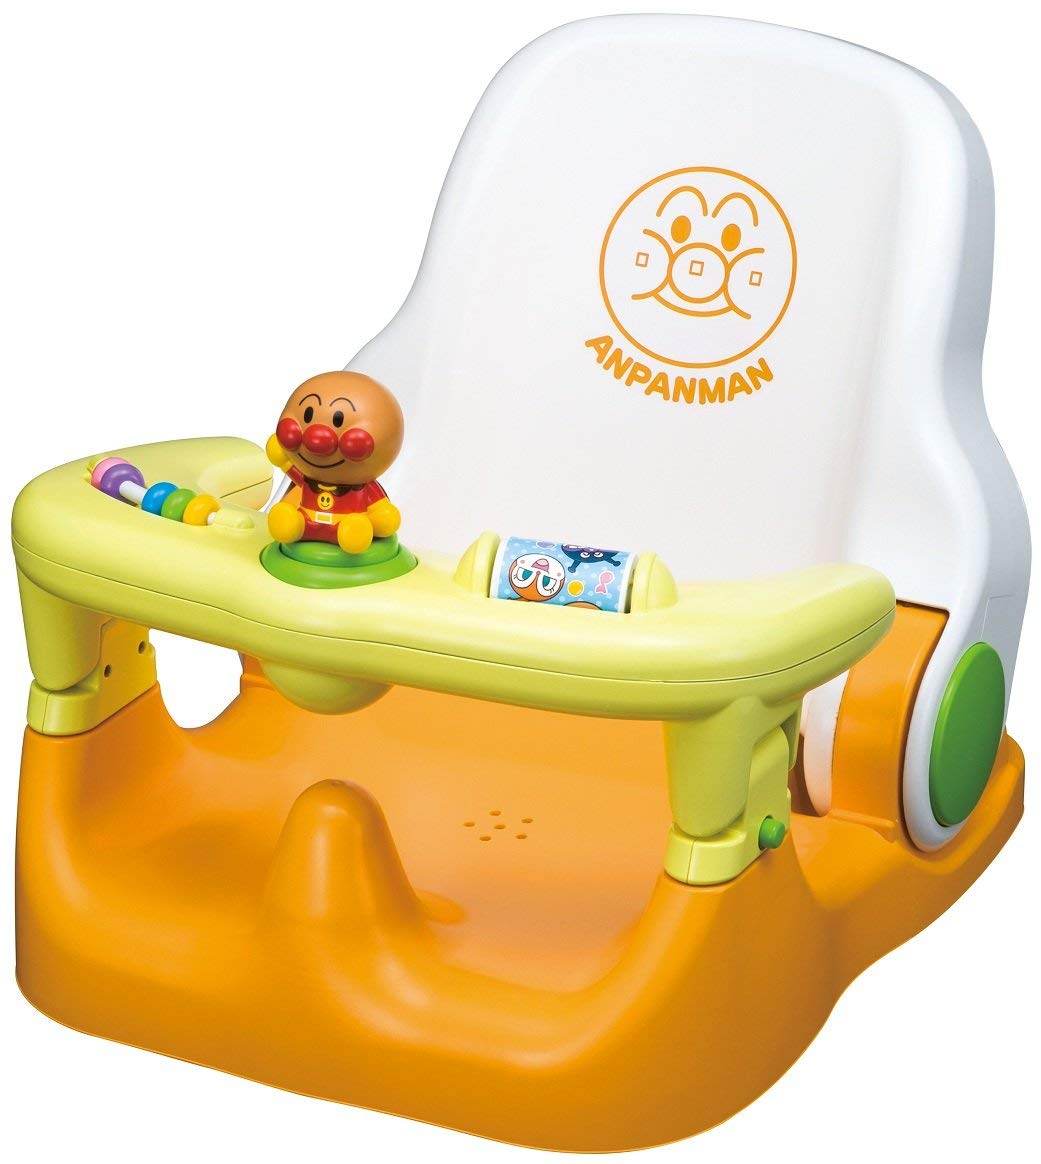 真愛日本 可調整三階段學習洗澡椅 麵包超人黃 可調整椅子 兒童學習椅 洗澡椅 椅子 兒童椅